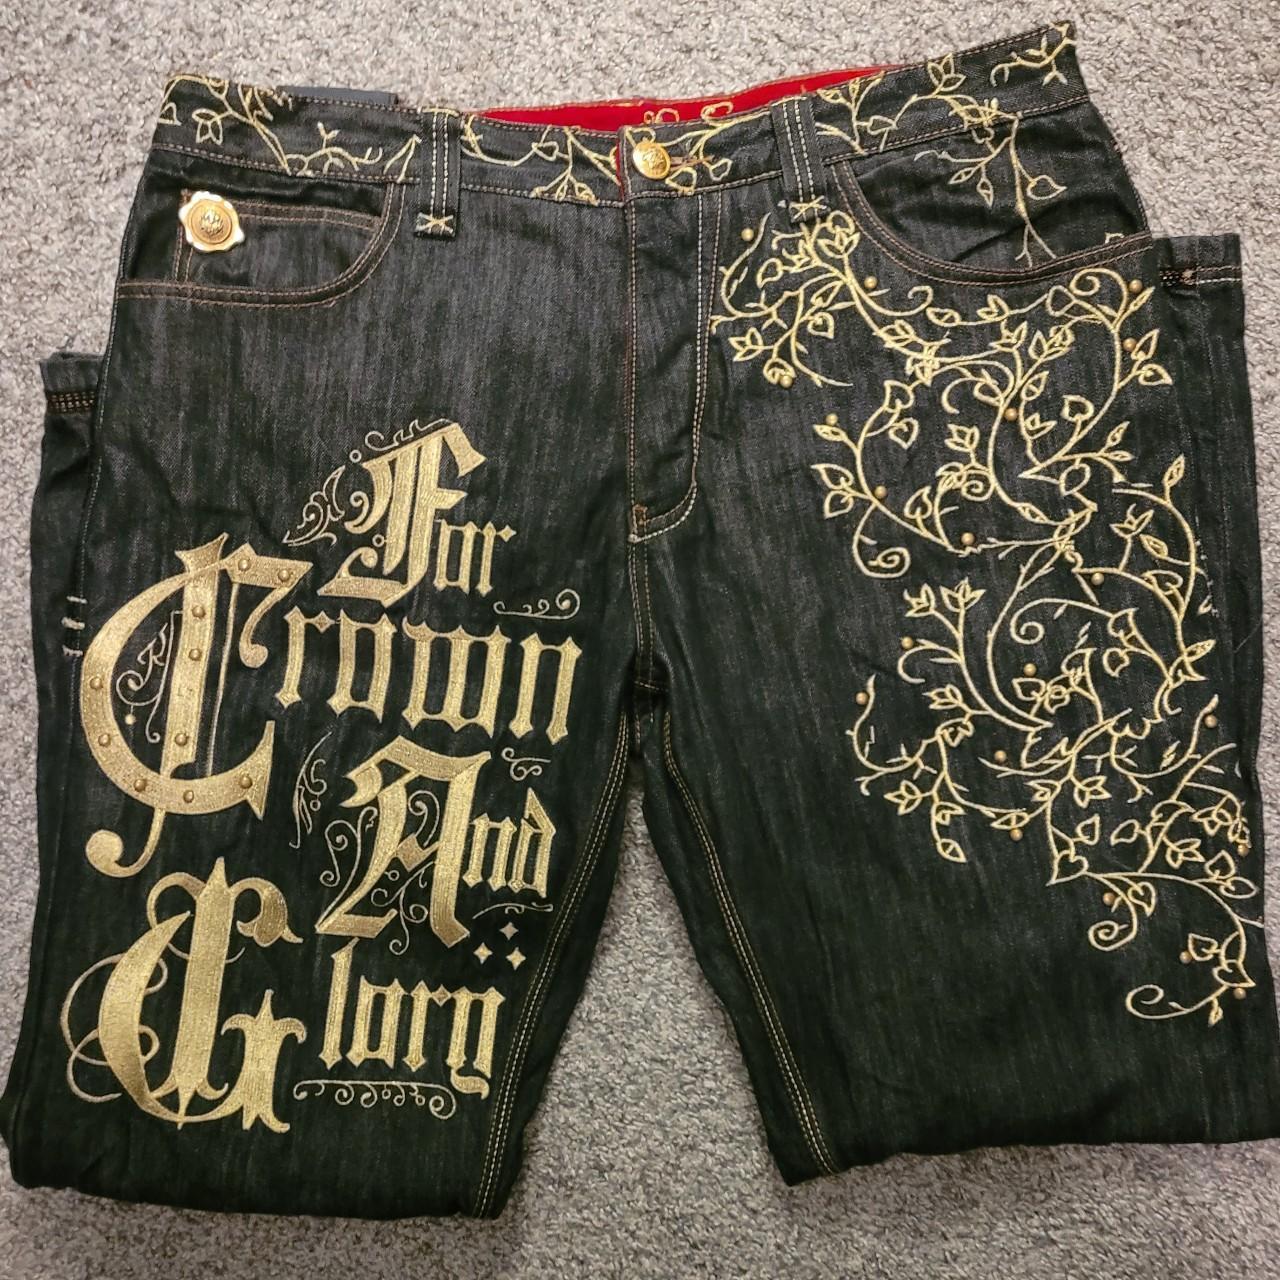 Super hard gold embroidered crown holder jeans Gold... - Depop